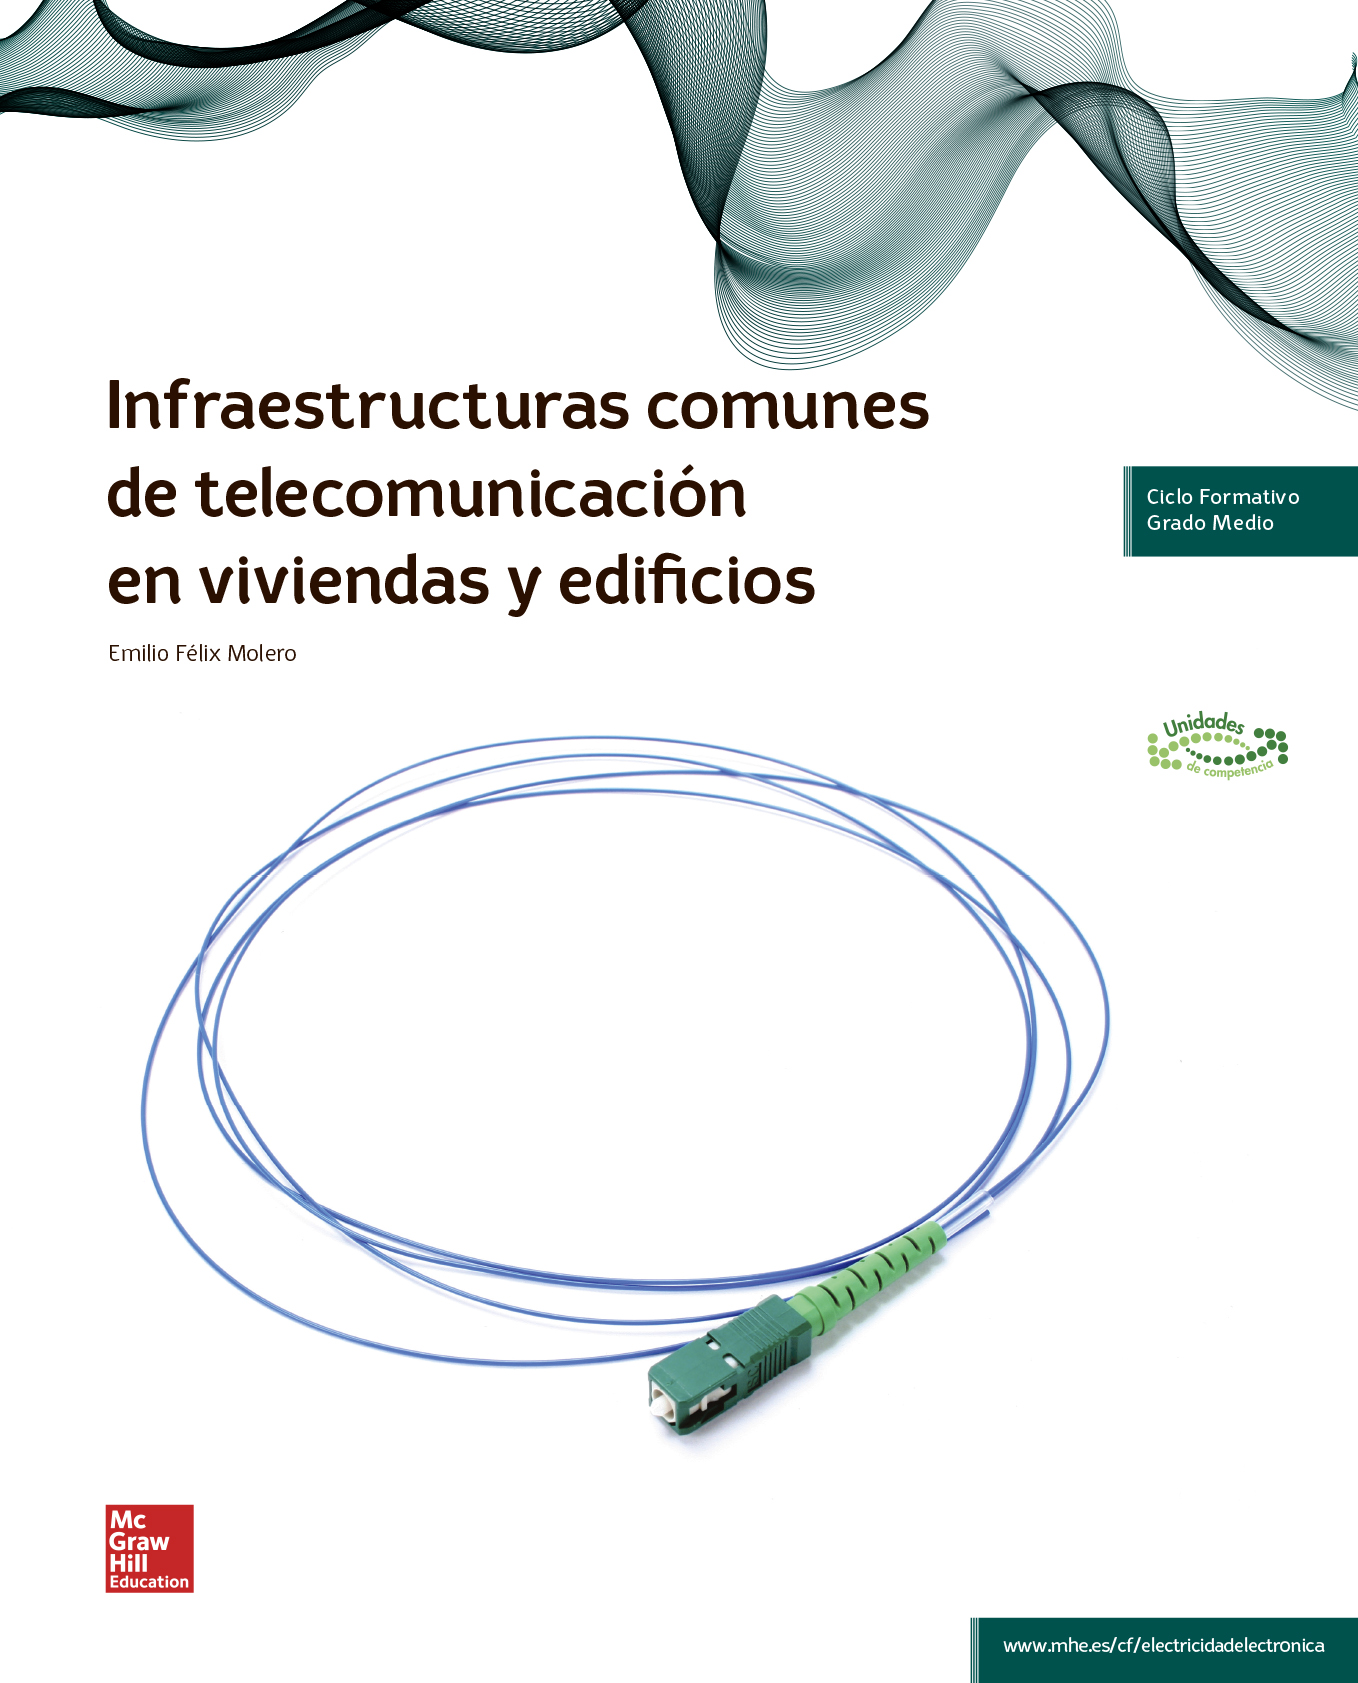 Infraestructuras comunes de telecomunicación en viviendas y edificios. GM